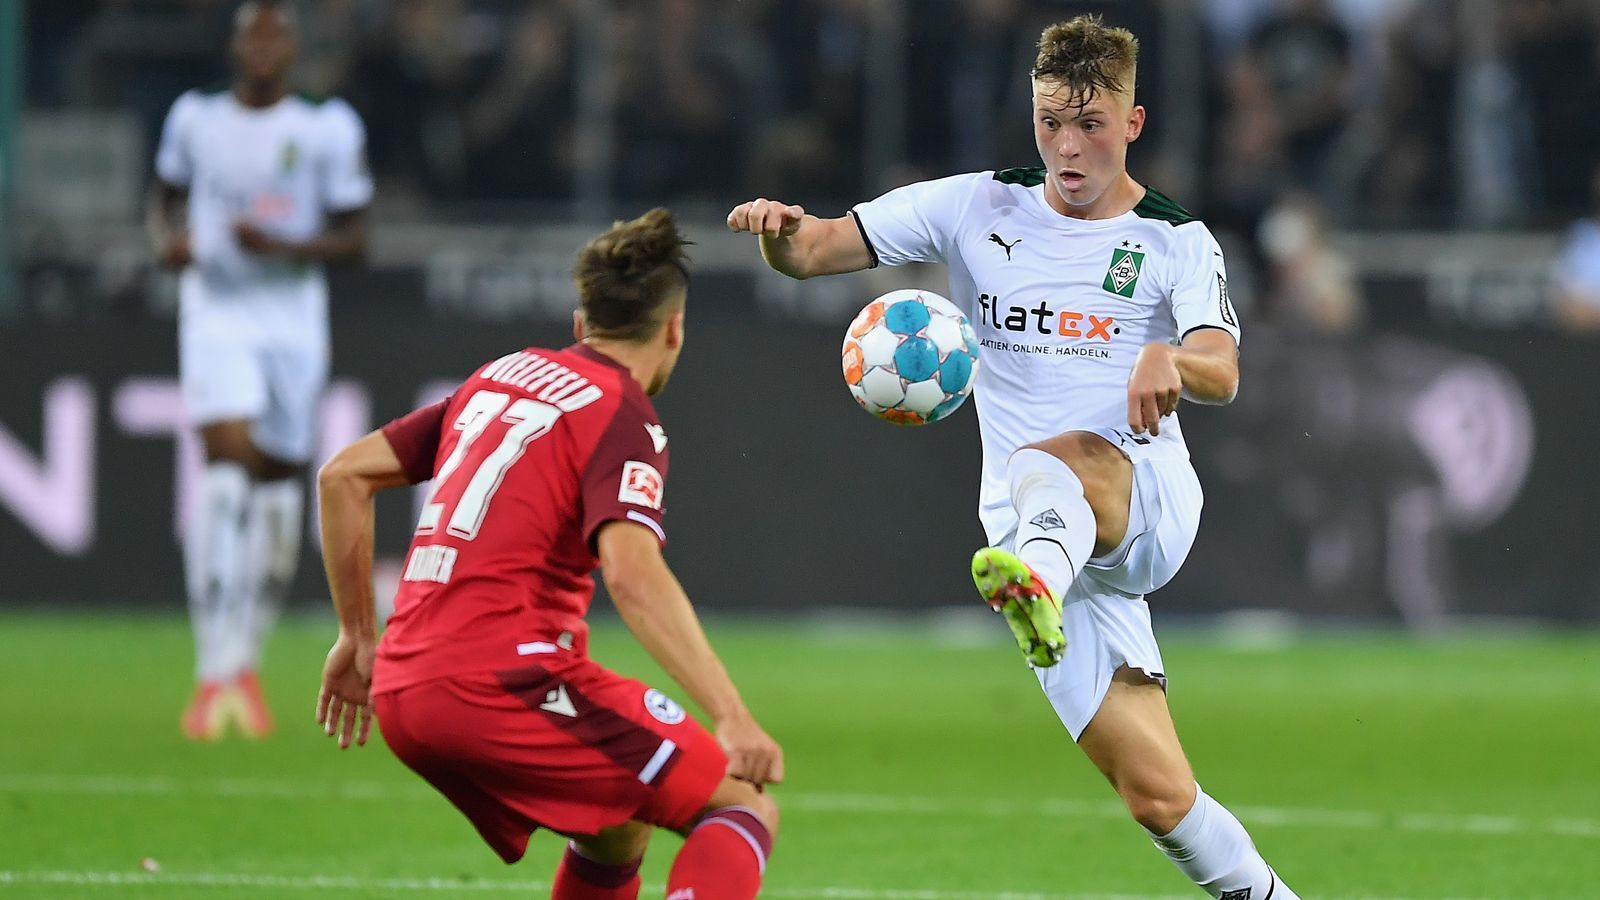 
                <strong>Luca Netz (Borussia Mönchengladbach)</strong><br>
                Der erst 18 Jahre junge Luca Netz ist nach Dortmunds Juwel Youssoufa Moukoko (16 Jahre) der zweitjüngste Spieler im ersten Aufgebot Di Salvos. Der gebürtige Berliner wechselte erst im August 2021 von der Hertha nach Gladbach, wo er einen Vertrag bis 2026 unterschrieb. Nach elf Bundesliga-Einsätzen in der Saison 2020/21 für die Hertha kommt das Außenverteidiger-Talent auch bei der Borussia bislang regelmäßig zu Einsätzen. 
              